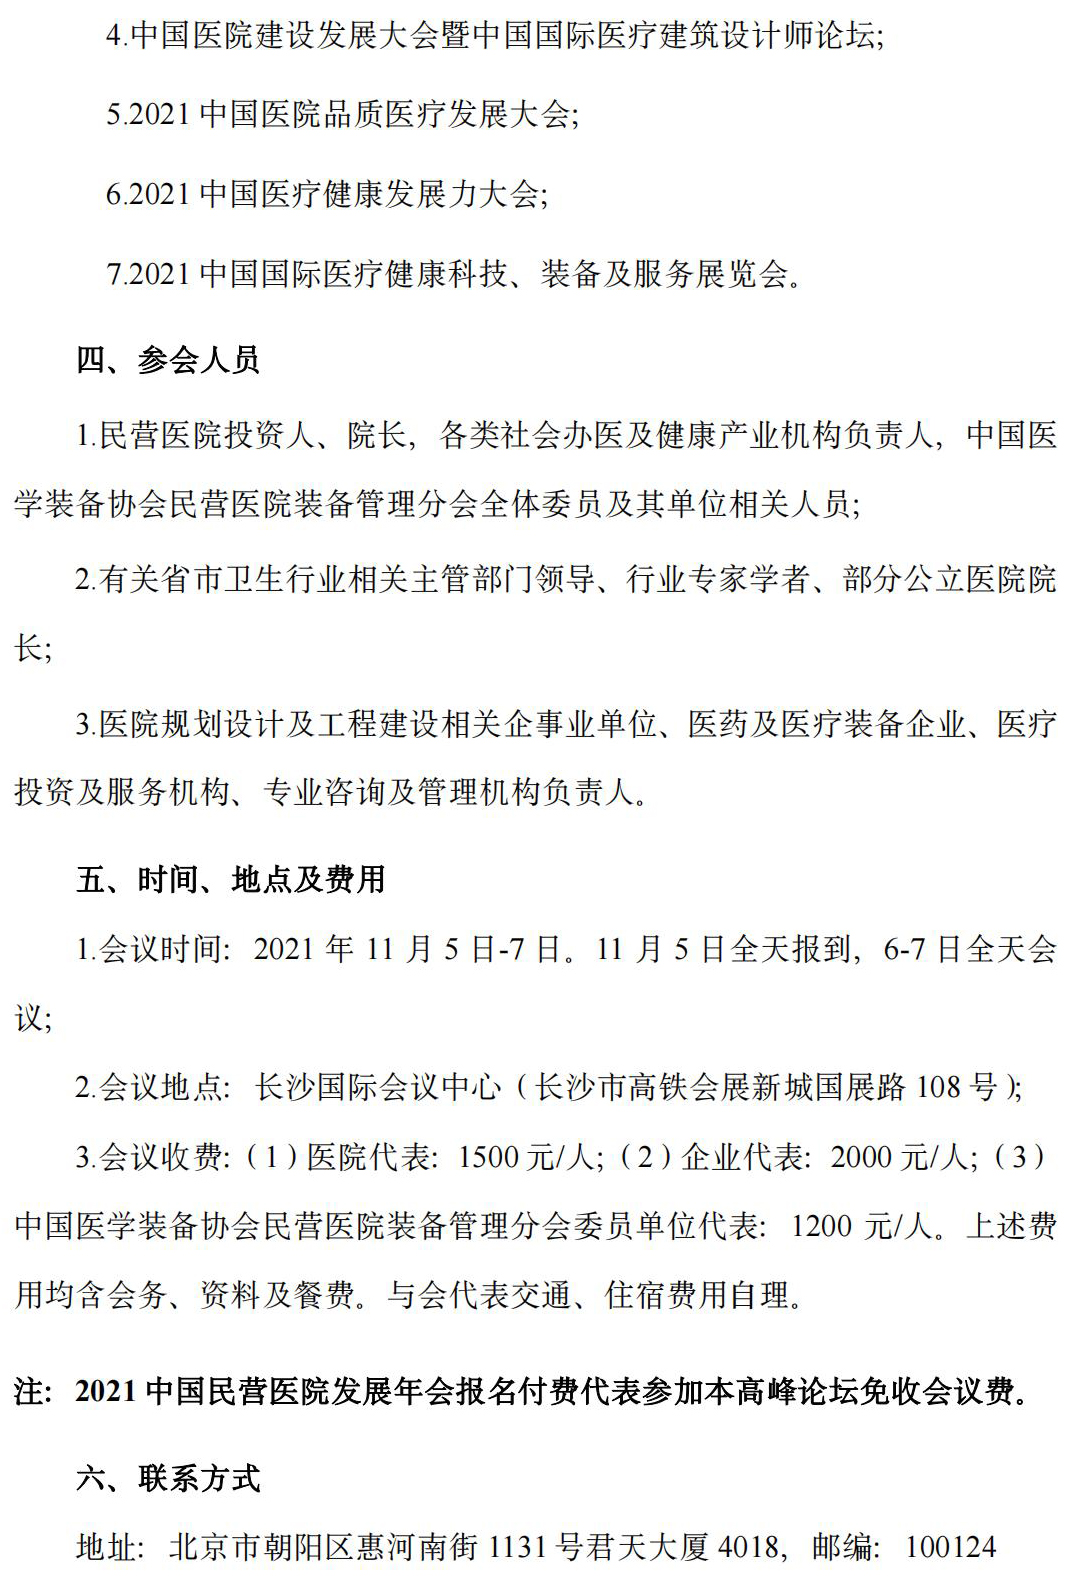 2021中国社会办医建设及管理高峰论坛邀请函F_03.jpg